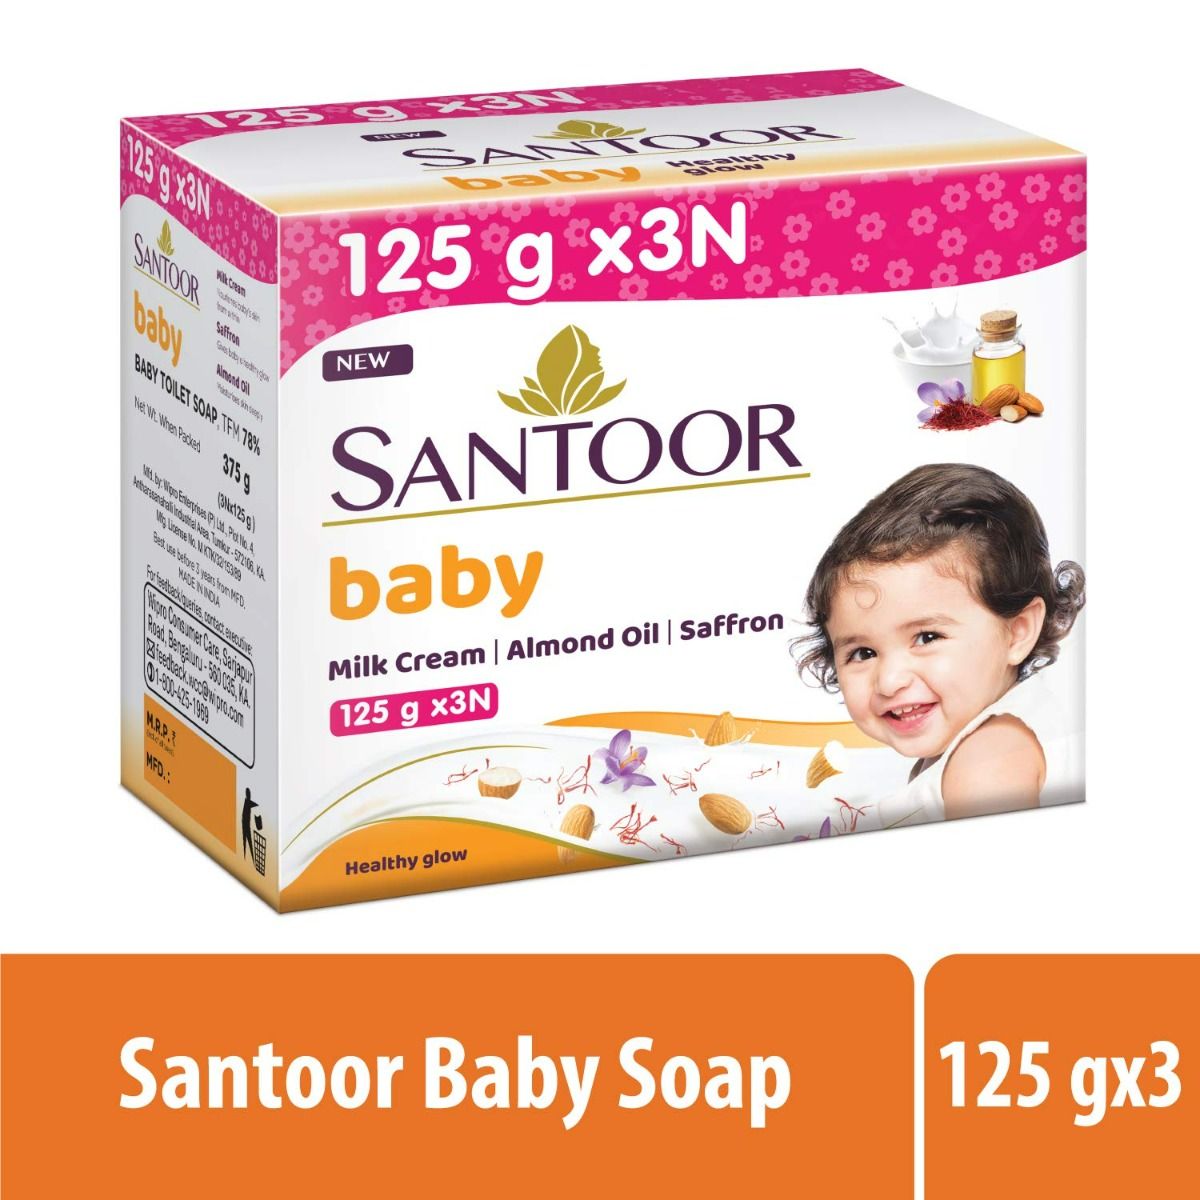 Buy Santoor Baby Healthy Glow Soap, 375 gm (3x125 gm) Online